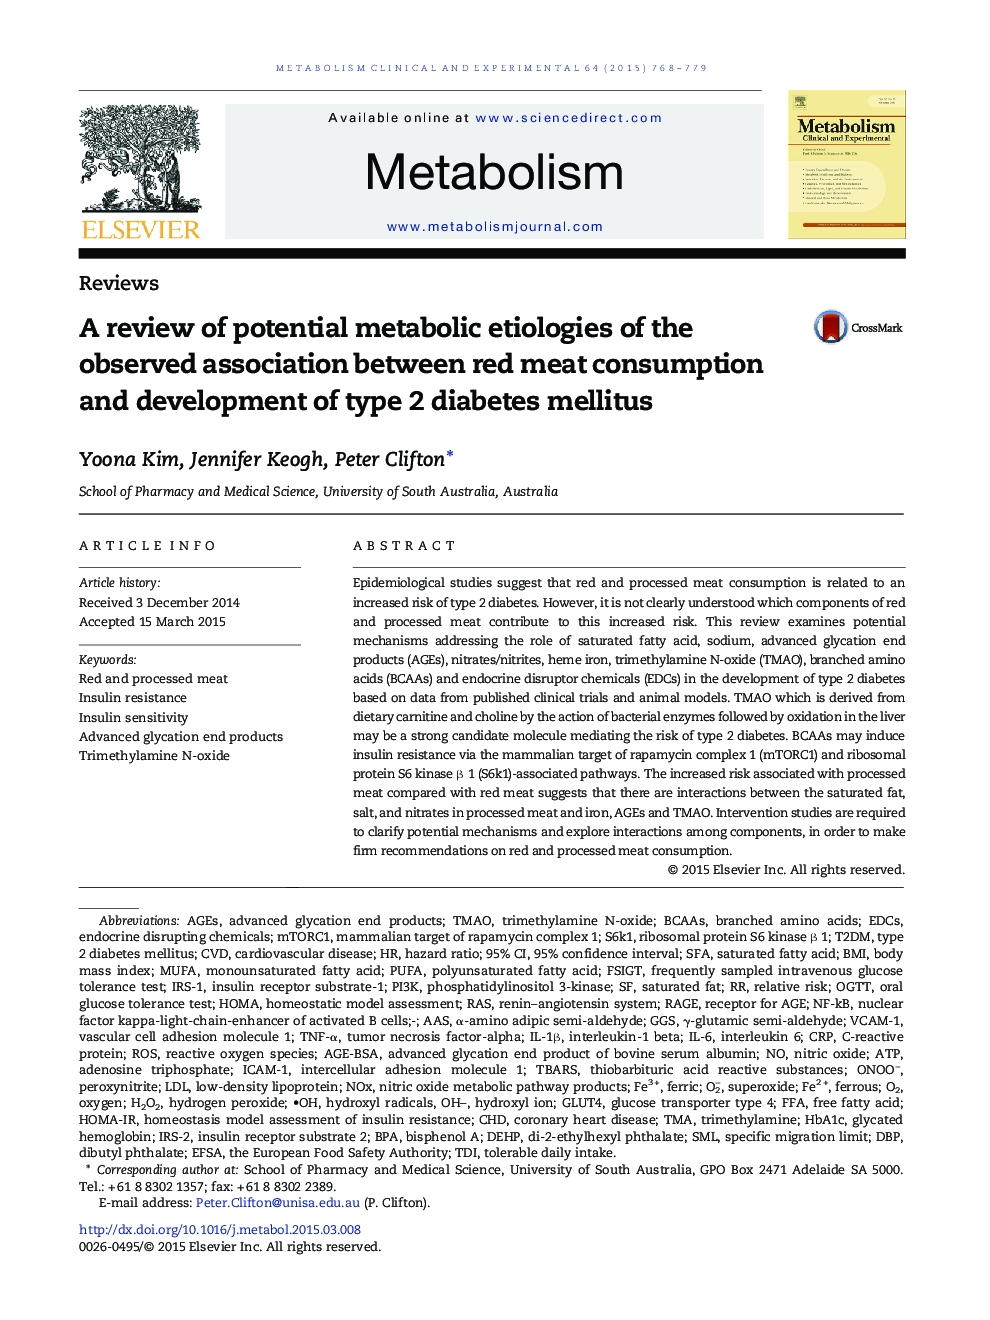 بررسی اتیولوژی متابولیسم بالقوه ارتباط مشاهده شده بین مصرف گوشت قرمز و توسعه دیابت نوع 2 